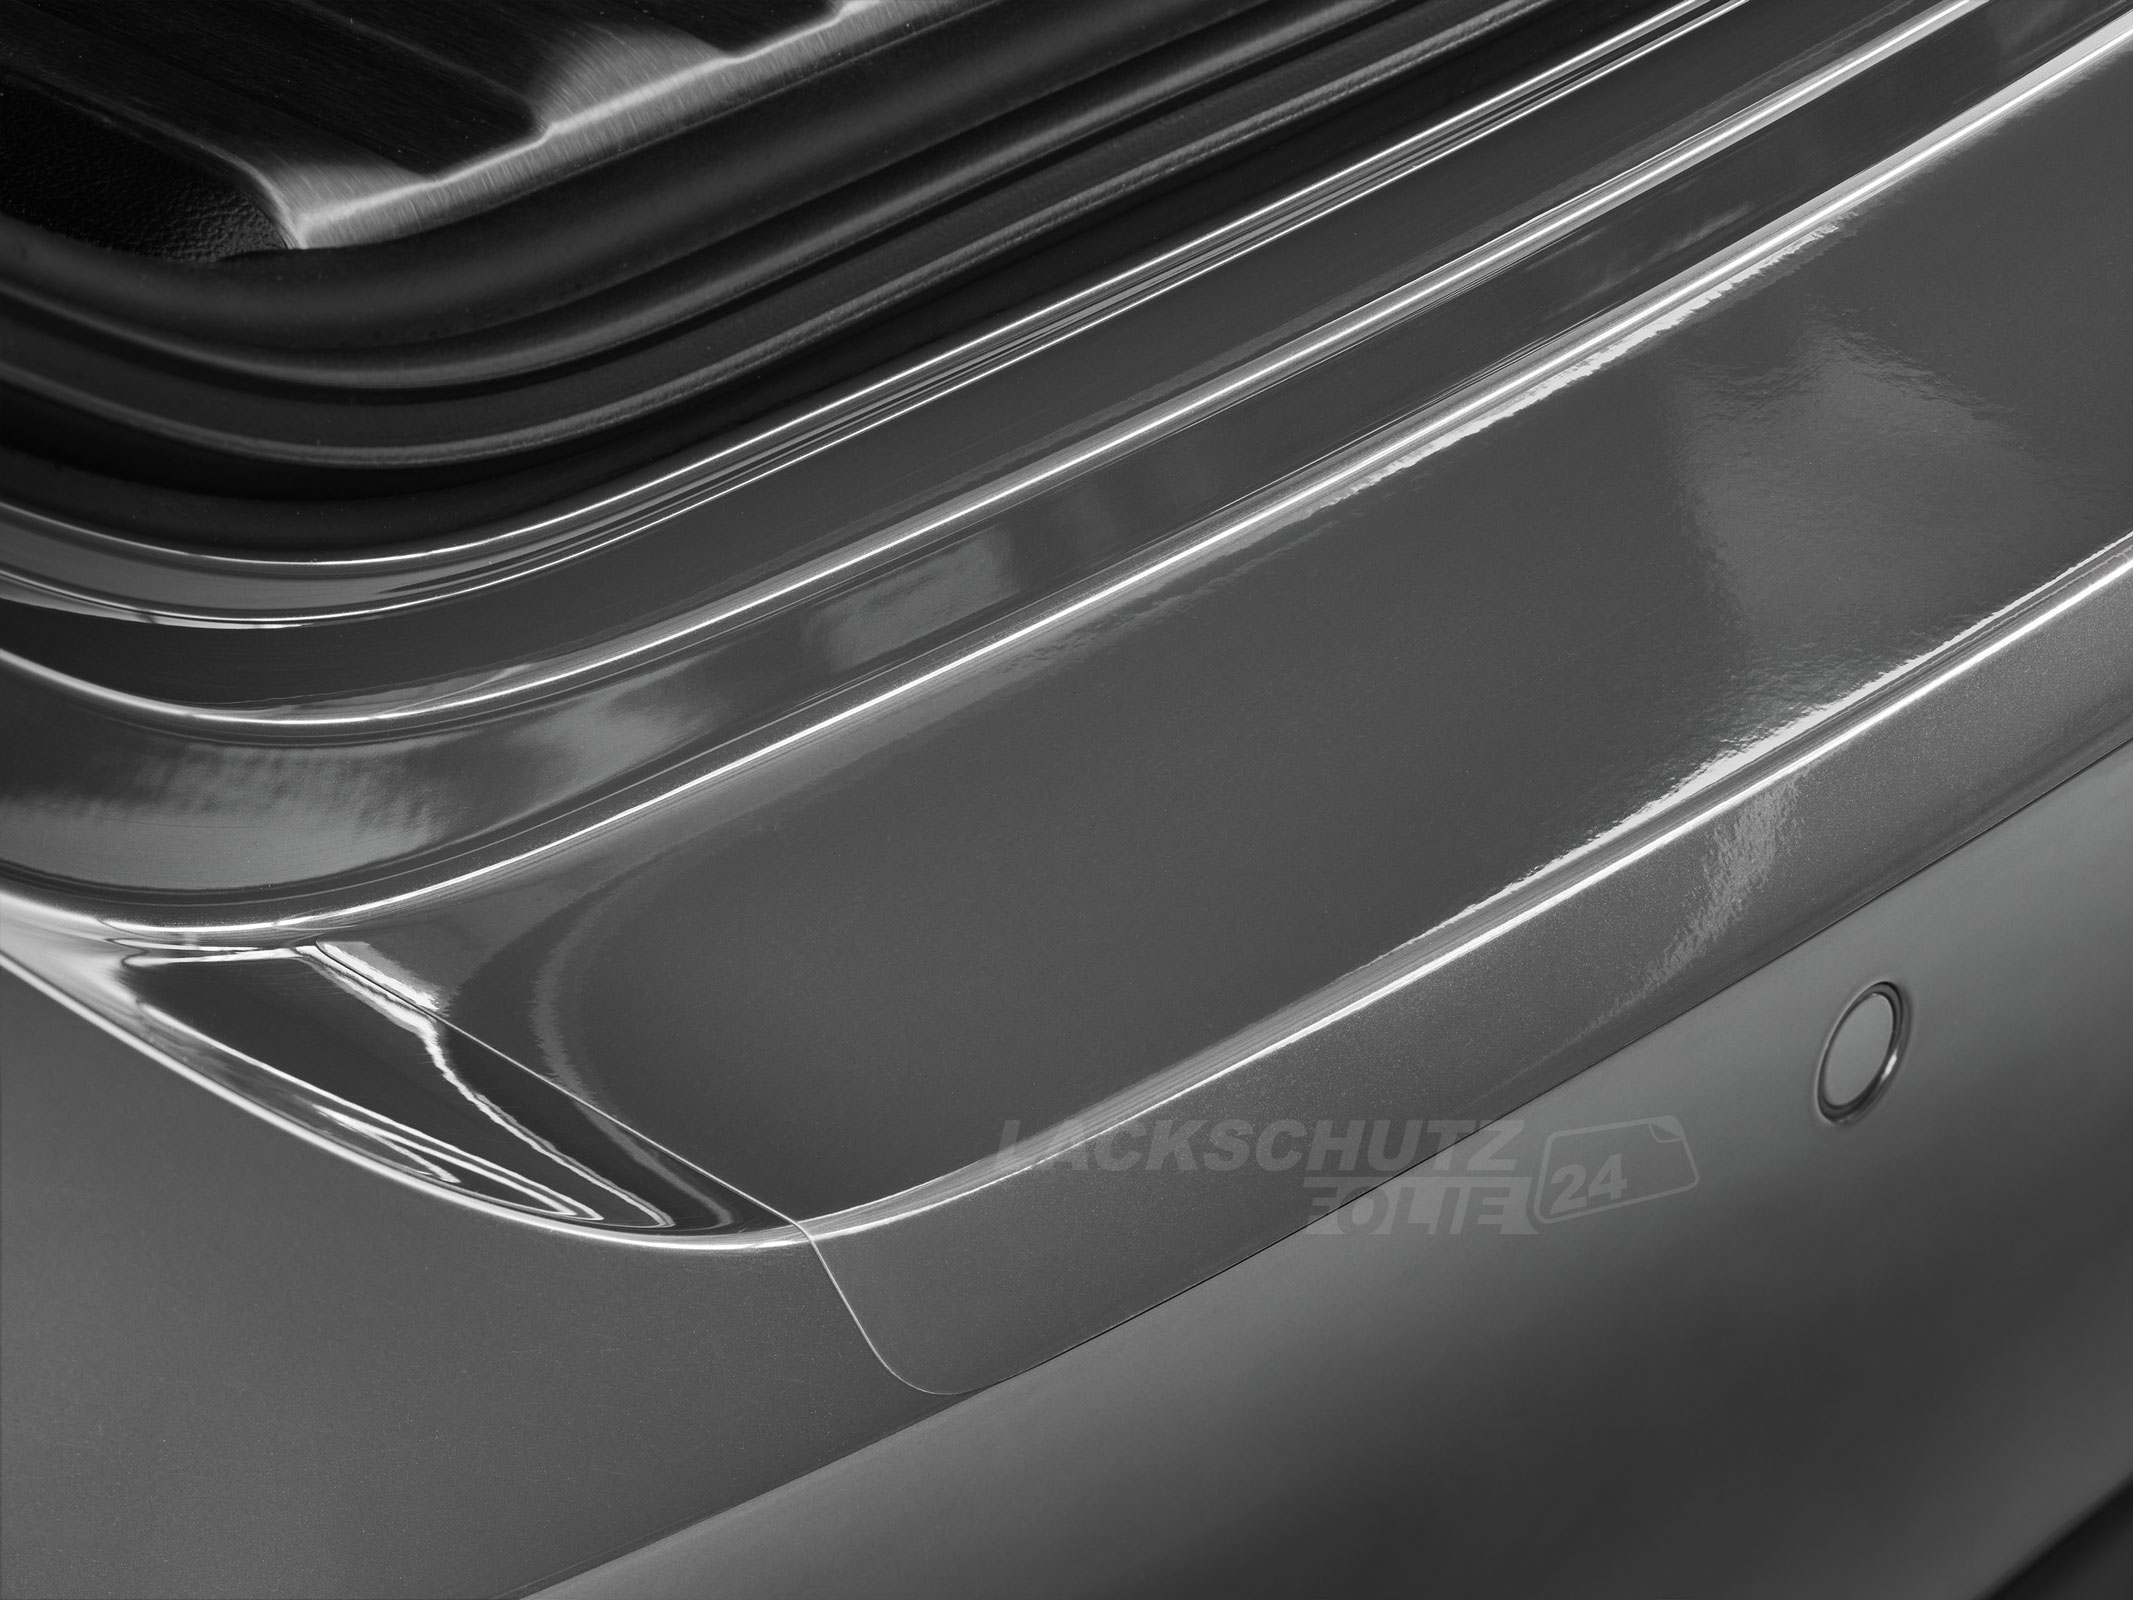 Ladekantenschutzfolie - Transparent Glatt Hochglänzend 240 µm stark für Mitsubishi Outlander (II) Typ CWoW, BJ 2006-10/2012